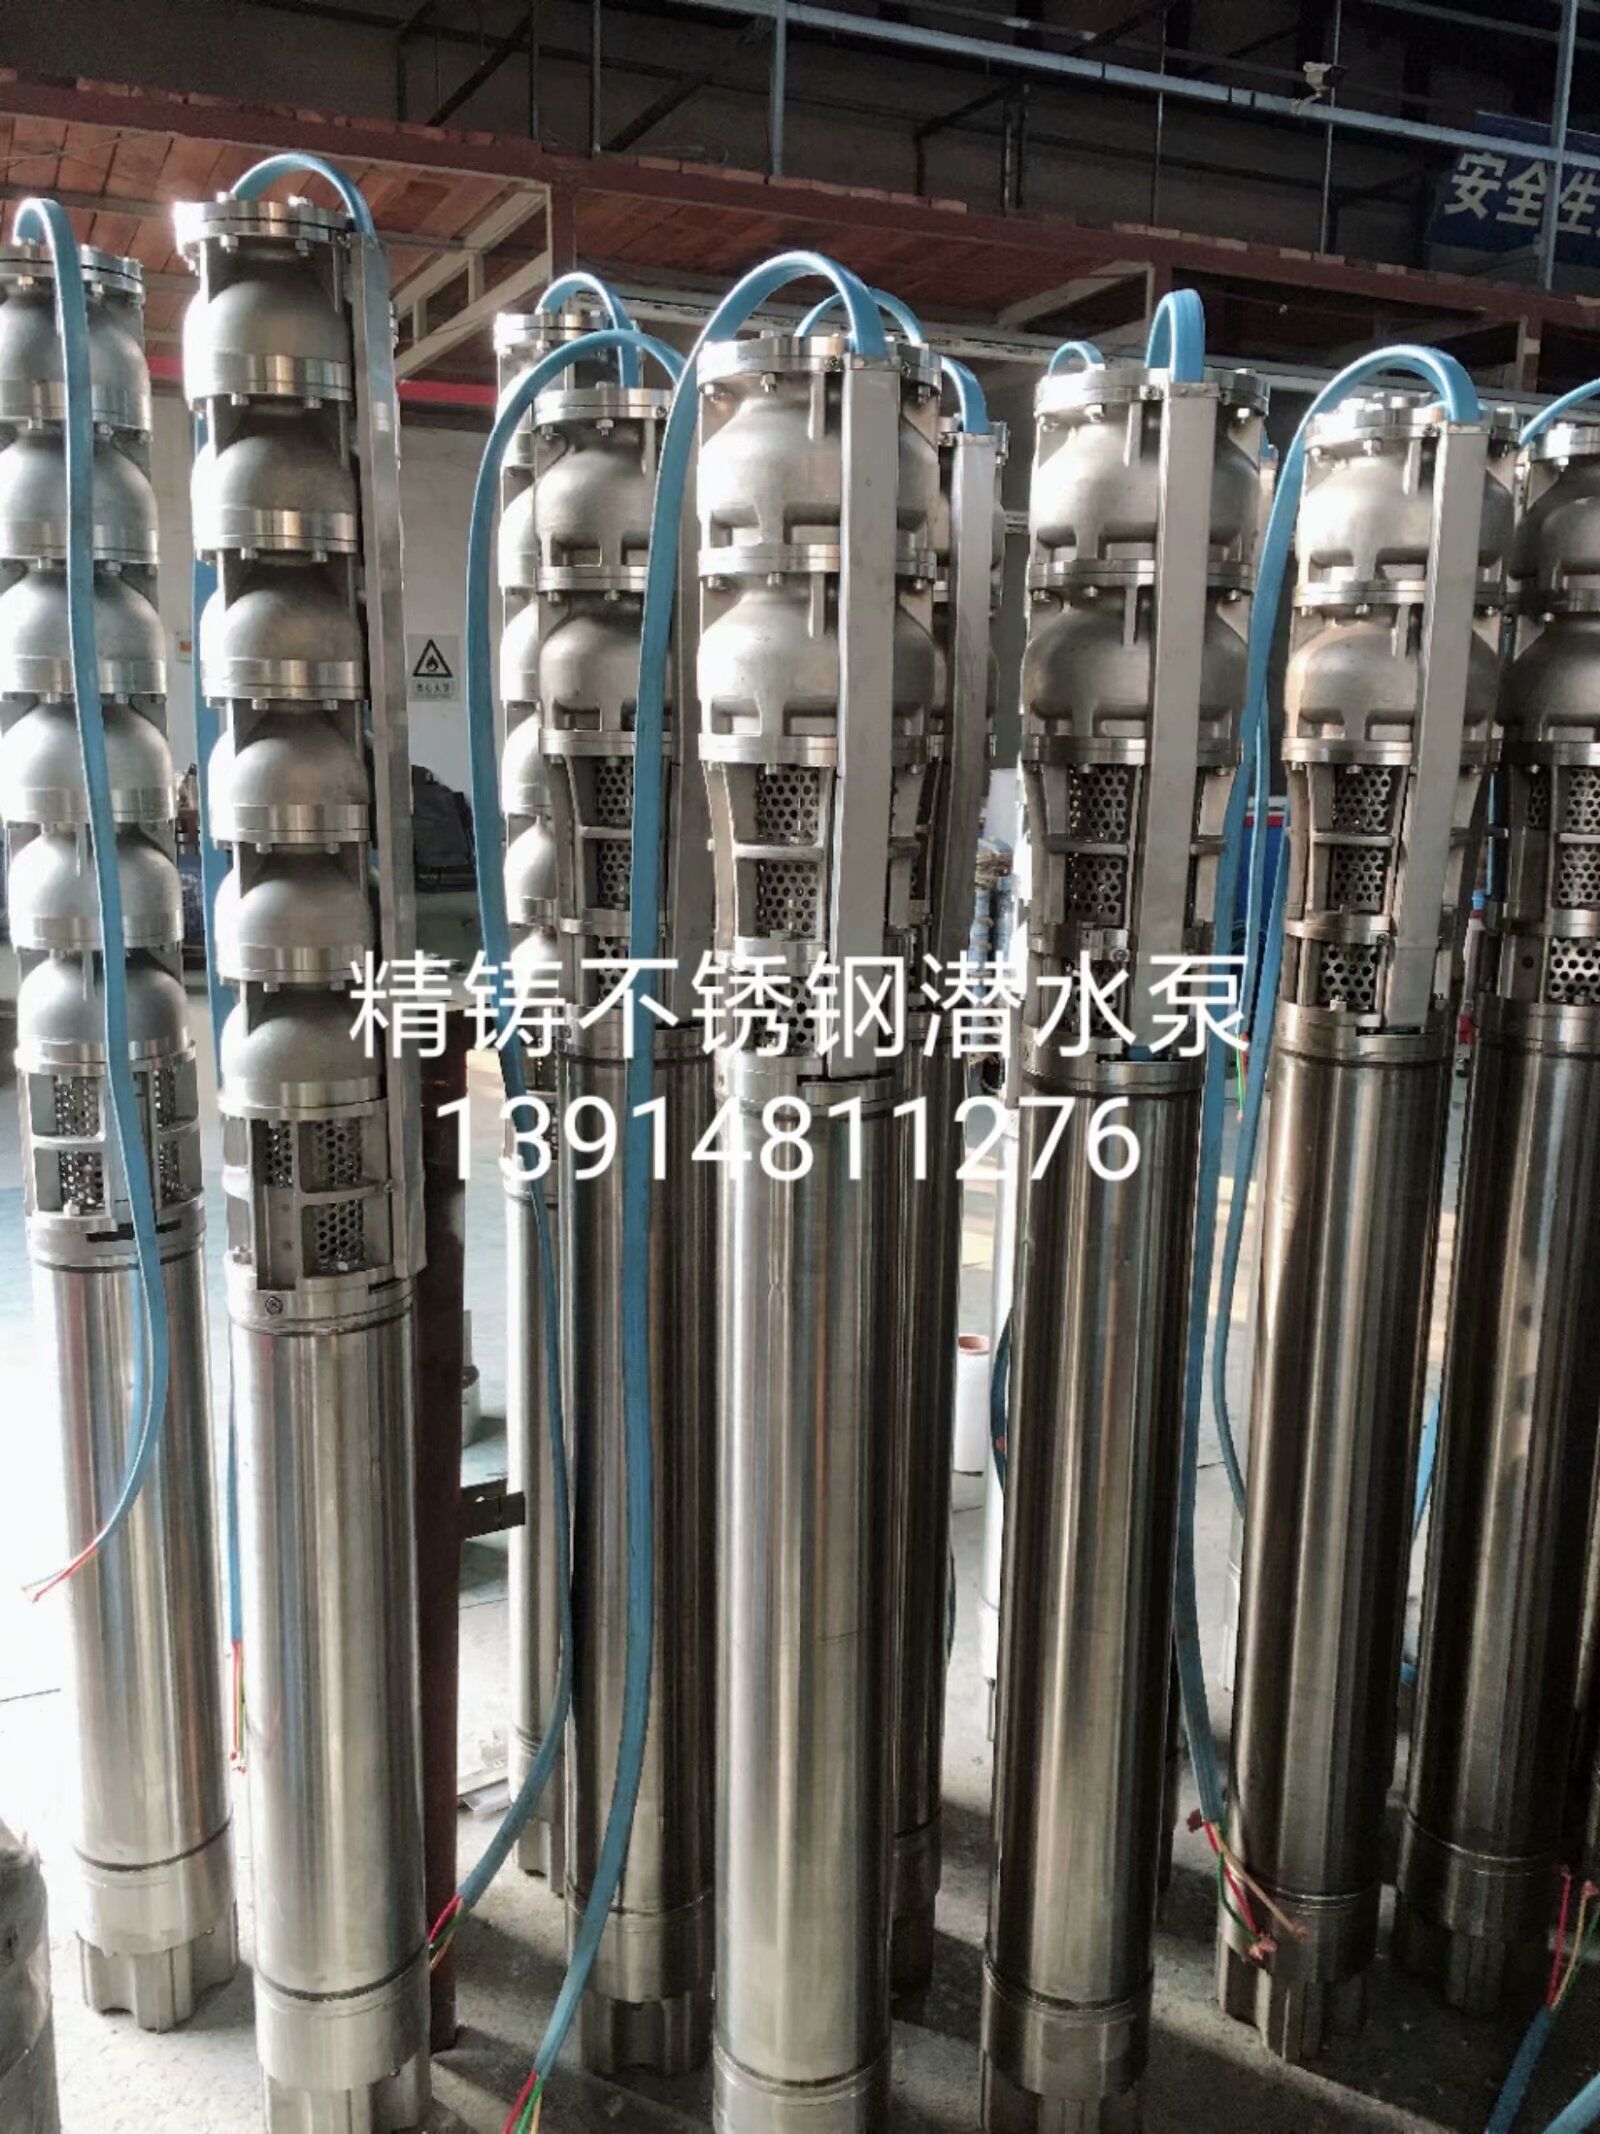 江苏精铸不锈钢电机供应商厂家直销批发价格优质批发商